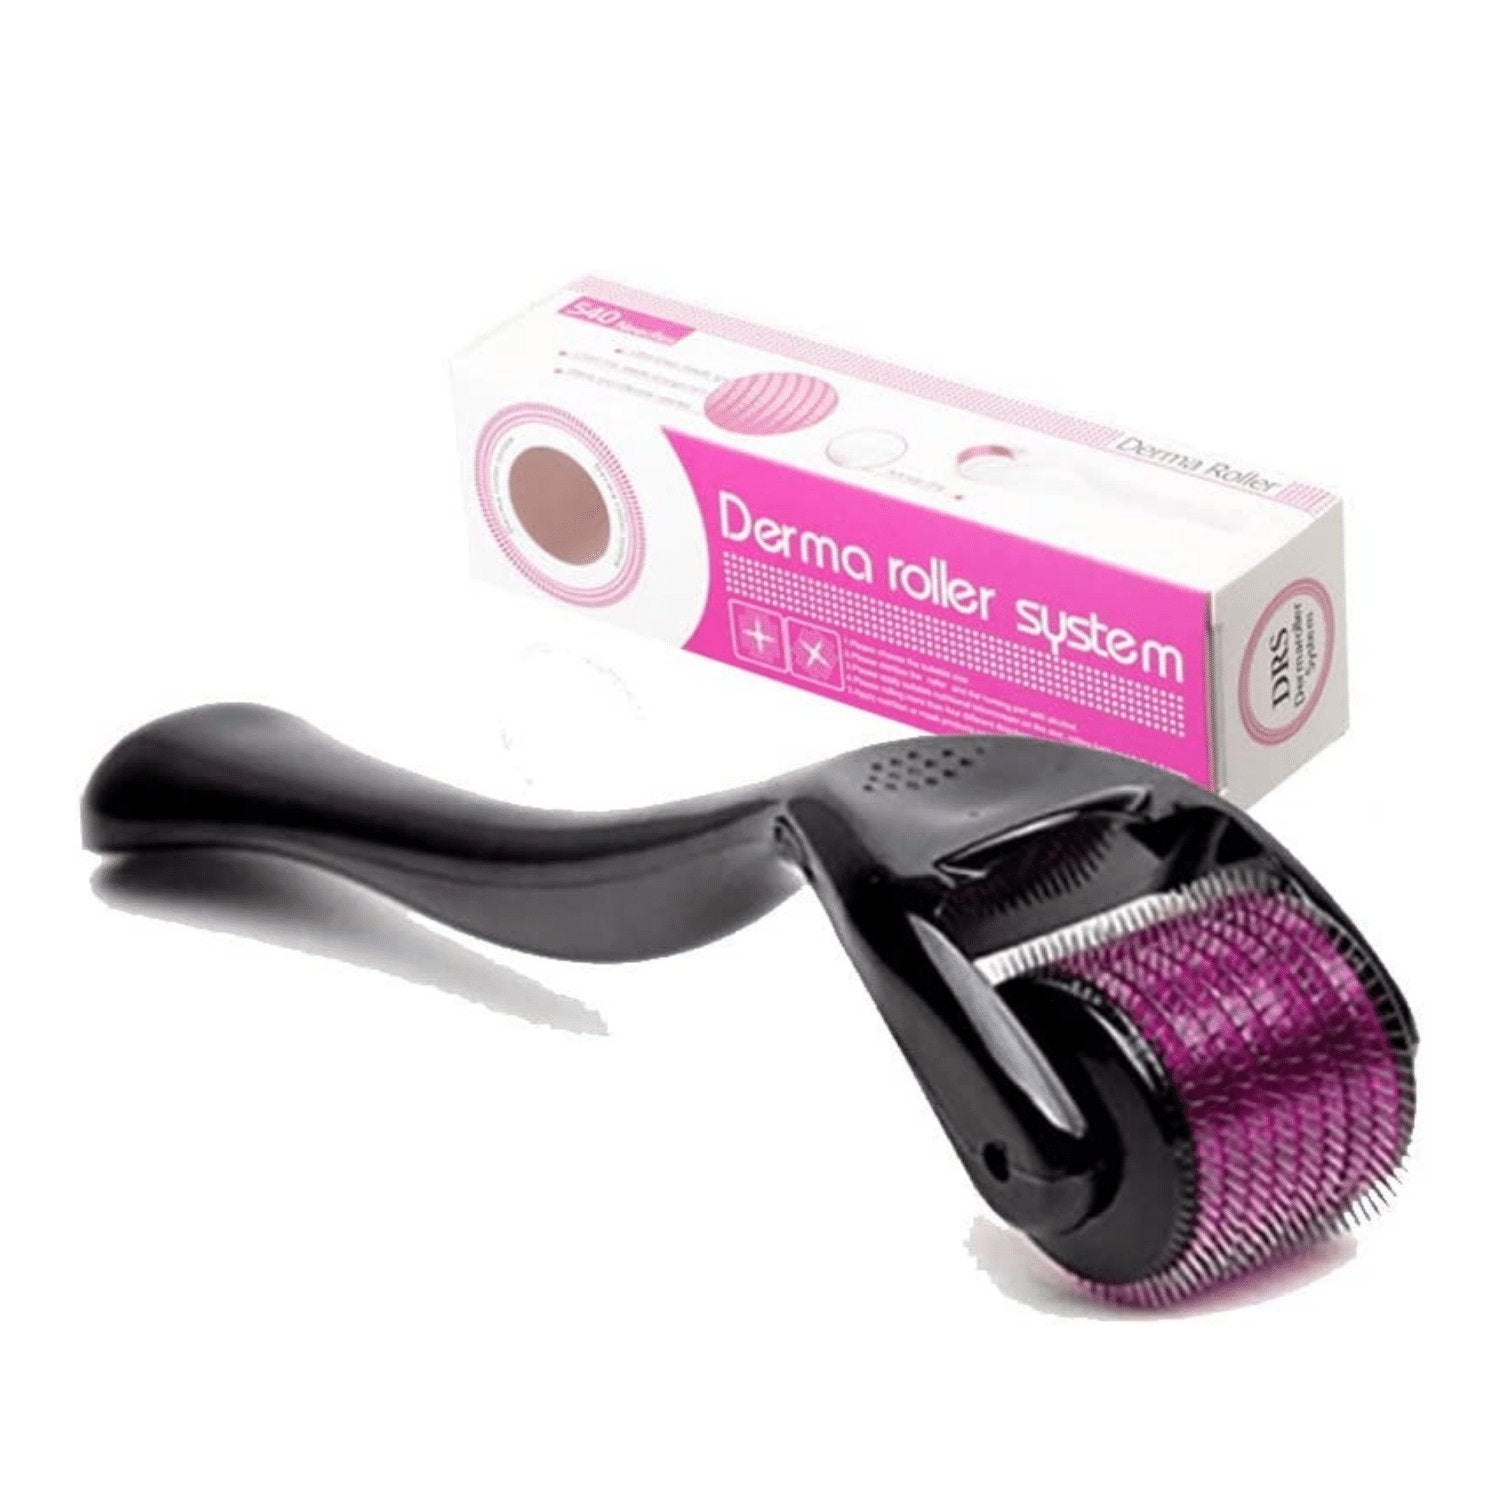 Derma Roller -Titanium 540 Needles 0.5mm - Dr. Pen Store - Dr. Pen Buy Genuine Dr Pen Products with Trust